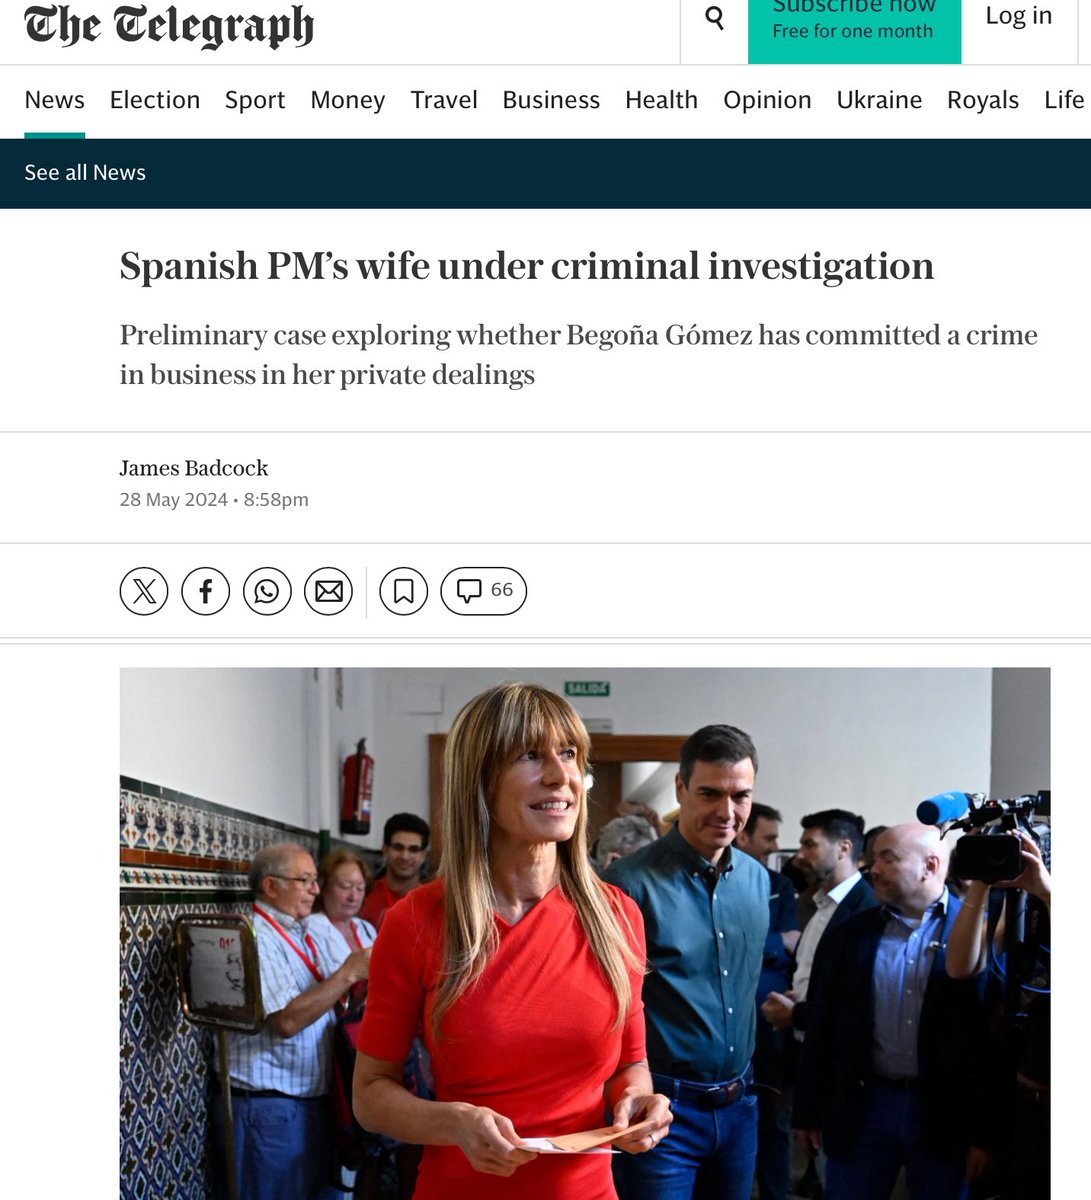 “La esposa del Primer Ministro de España bajo investigación criminal” The Telegraph No tenéis vergüenza socialistas y comunistas. #SánchezDimisión